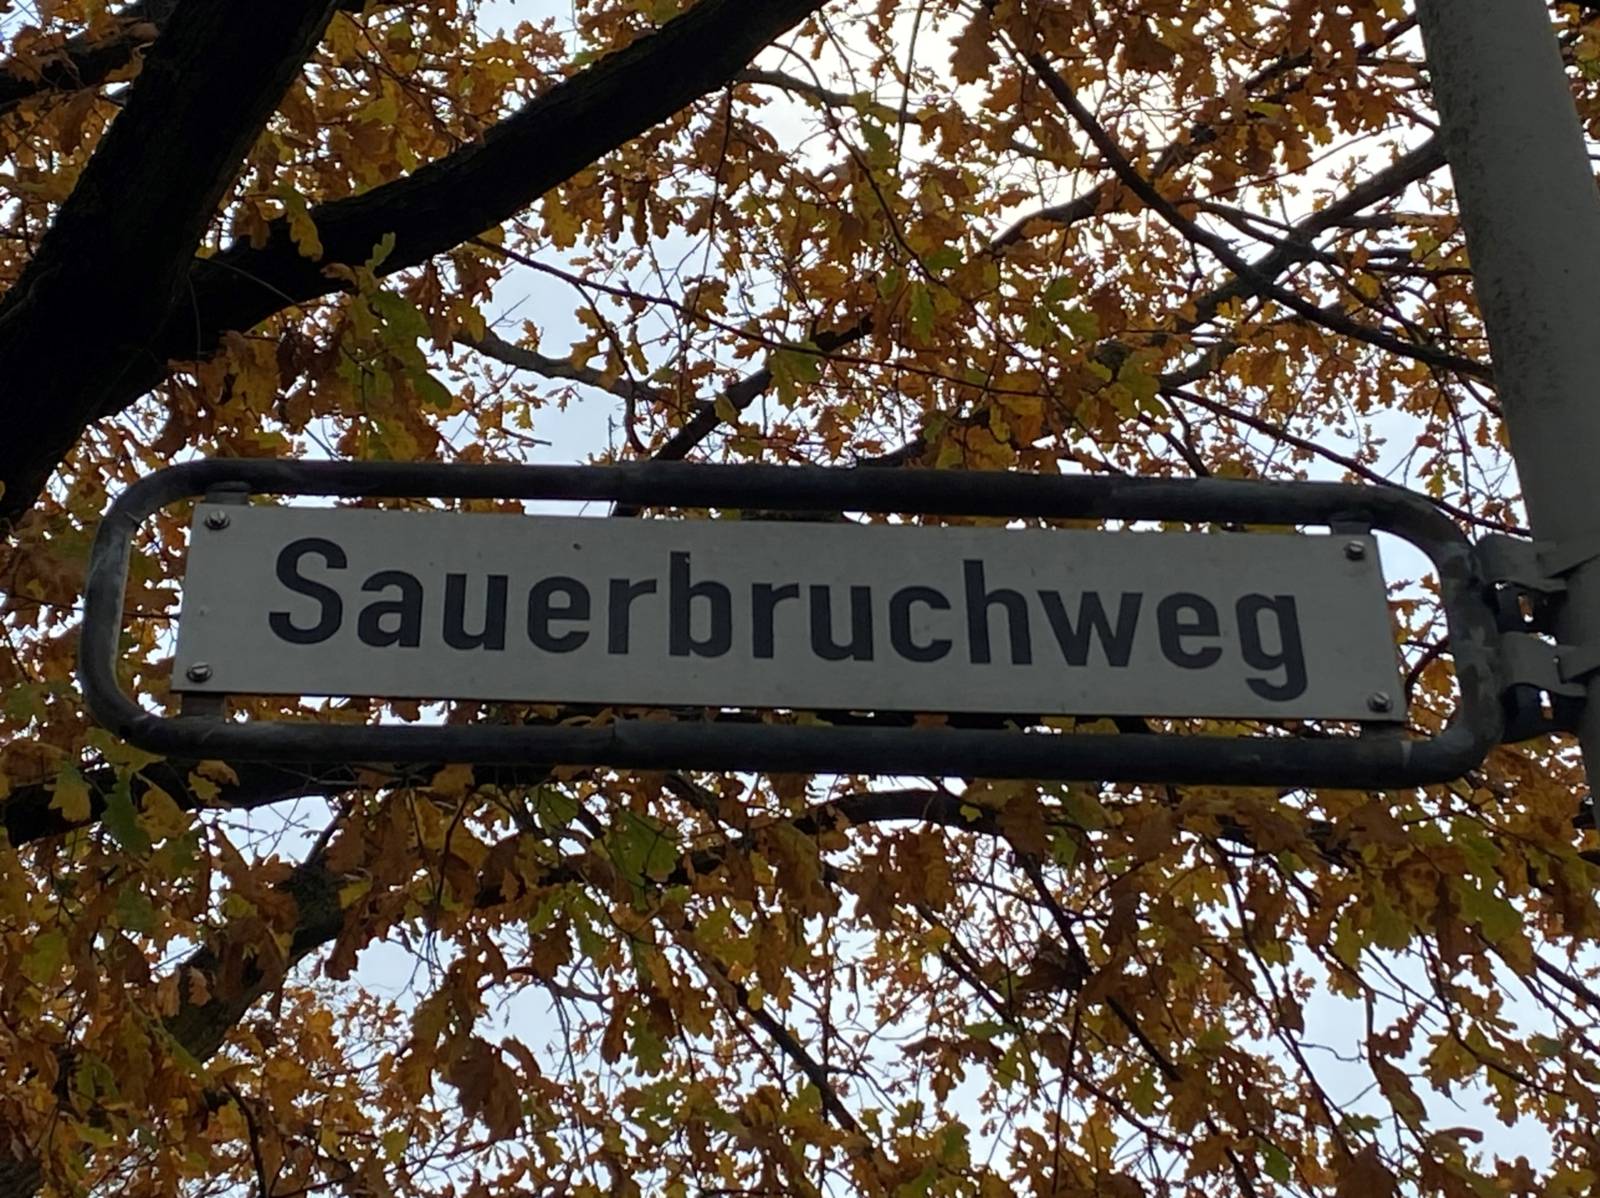 Auf dem Bild ist ein Straßenschild mit dem Namen "Sauerbruchweg". Im Hintergrund ist ein herbstlich besetzter Baum zu sehen.